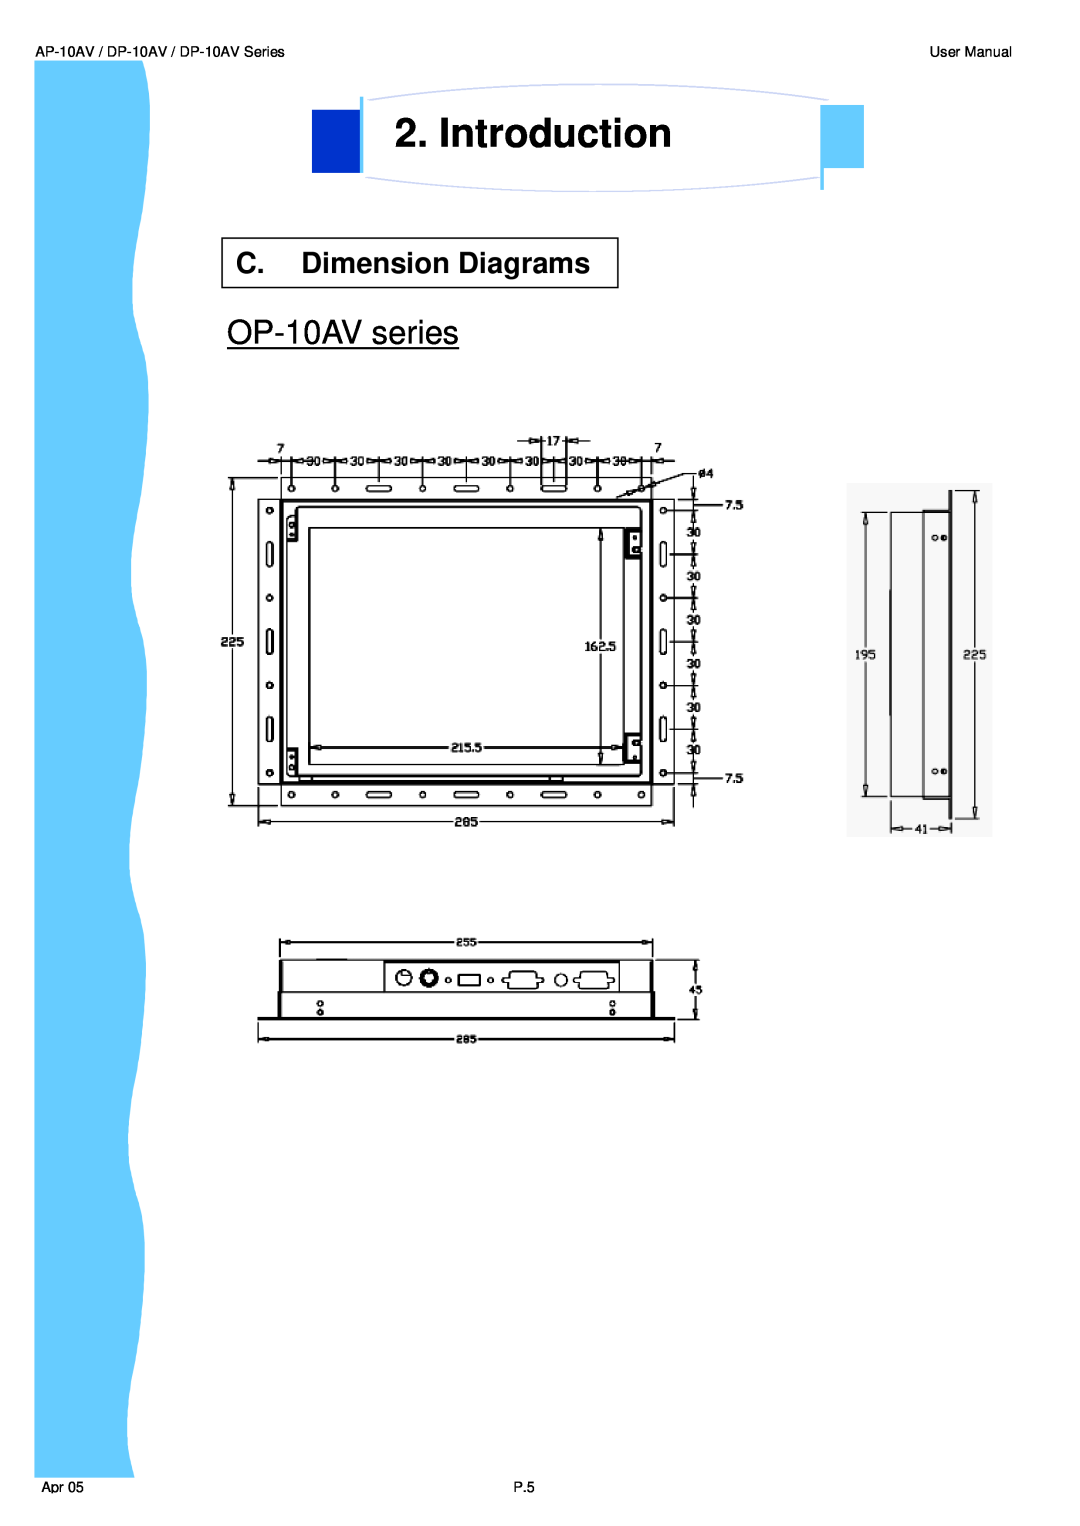 3M UMUV.10-045V2 OP-10AV series, Introduction, C. Dimension Diagrams, AP-10AV / DP-10AV / DP-10AV Series, User Manual 